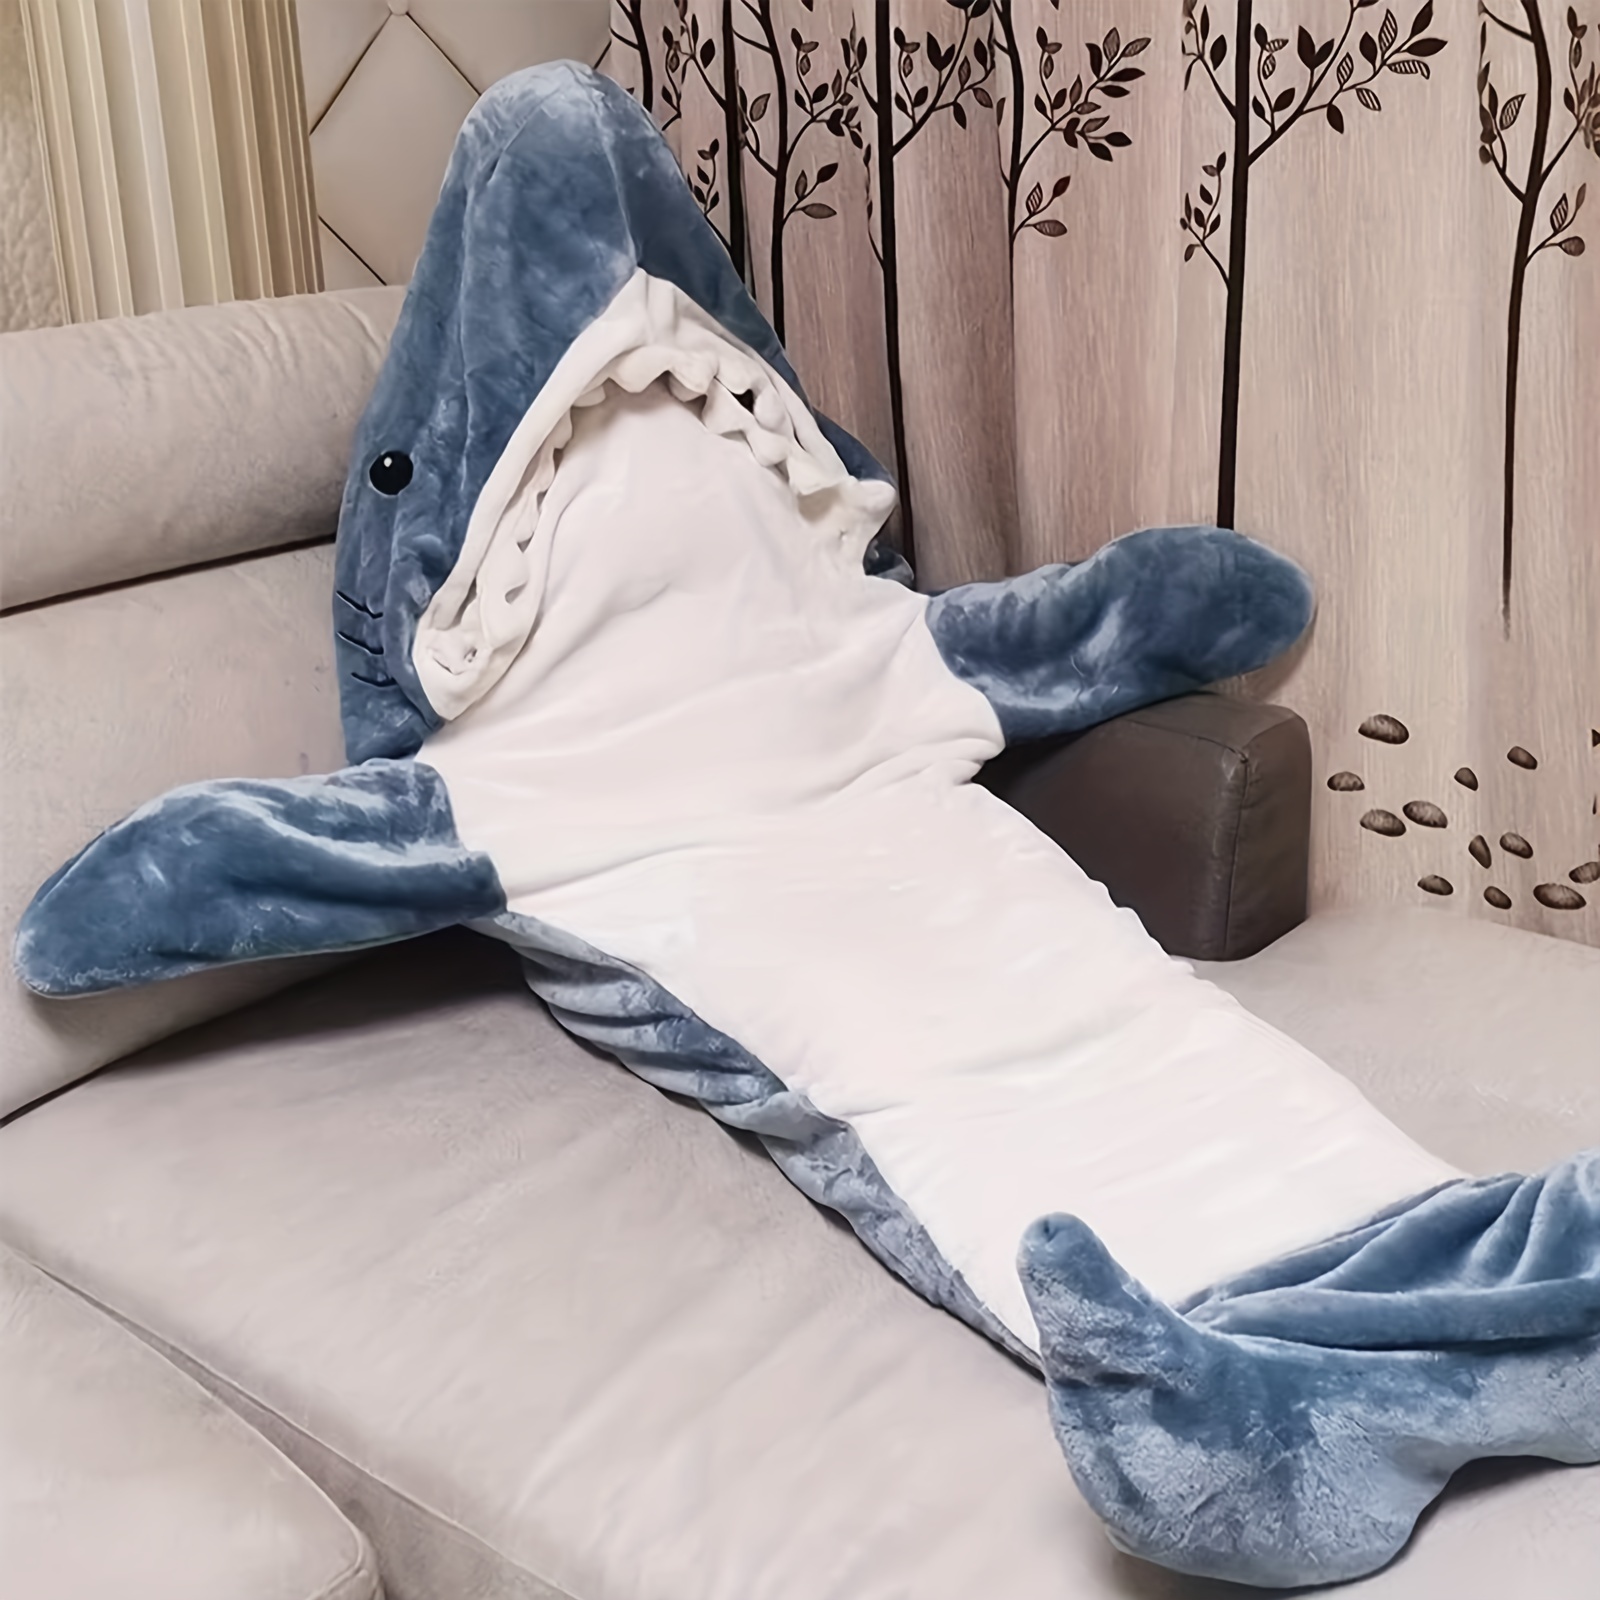 Disfraz de Pijama Tiburón gris y blanco para adultos